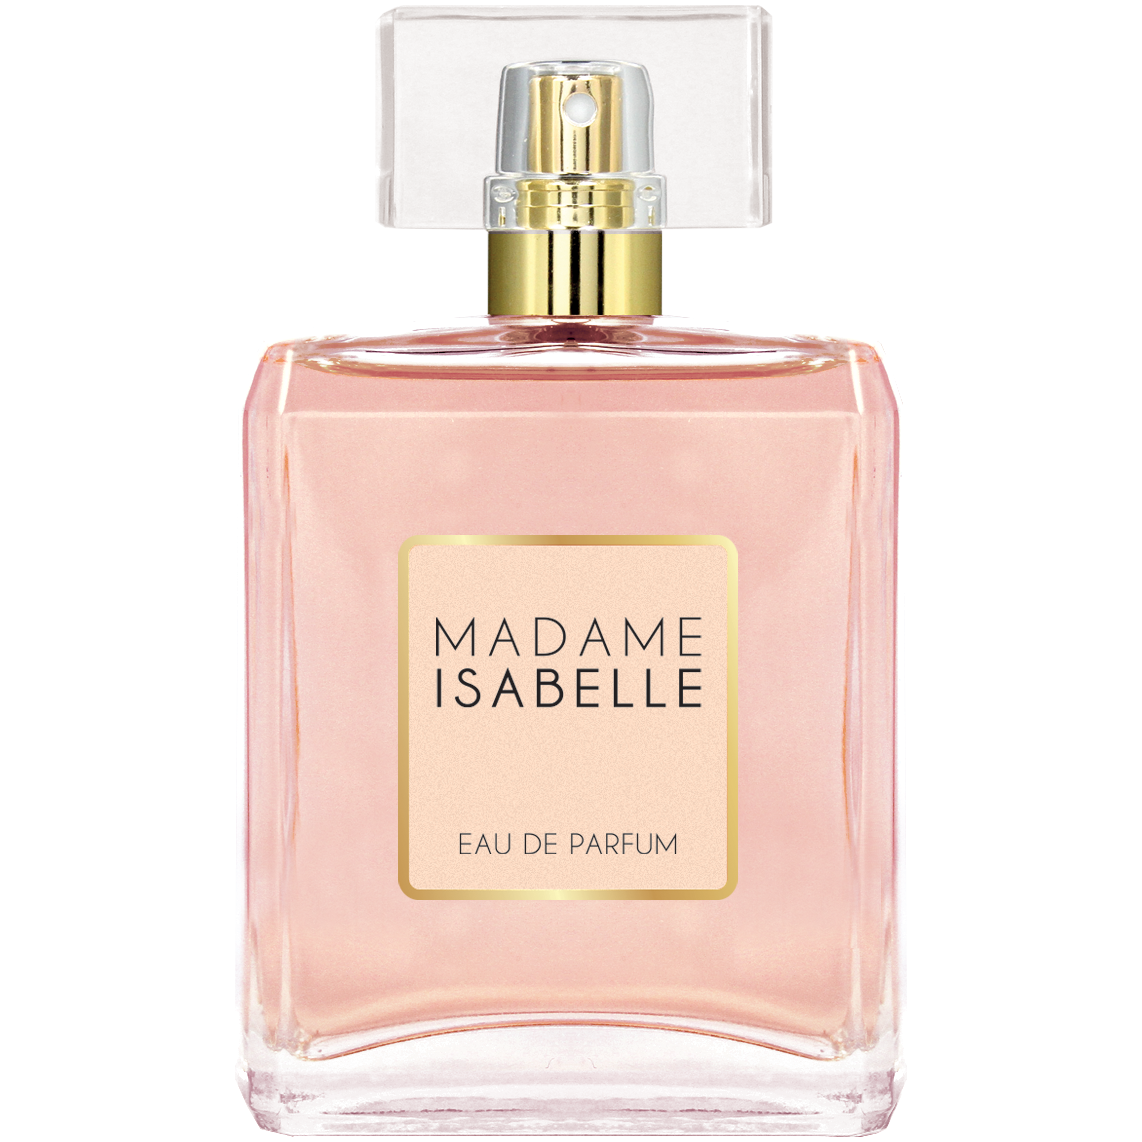 La Rive Madame Isabelle парфюмированная вода для женщин, 90 мл цена и фото